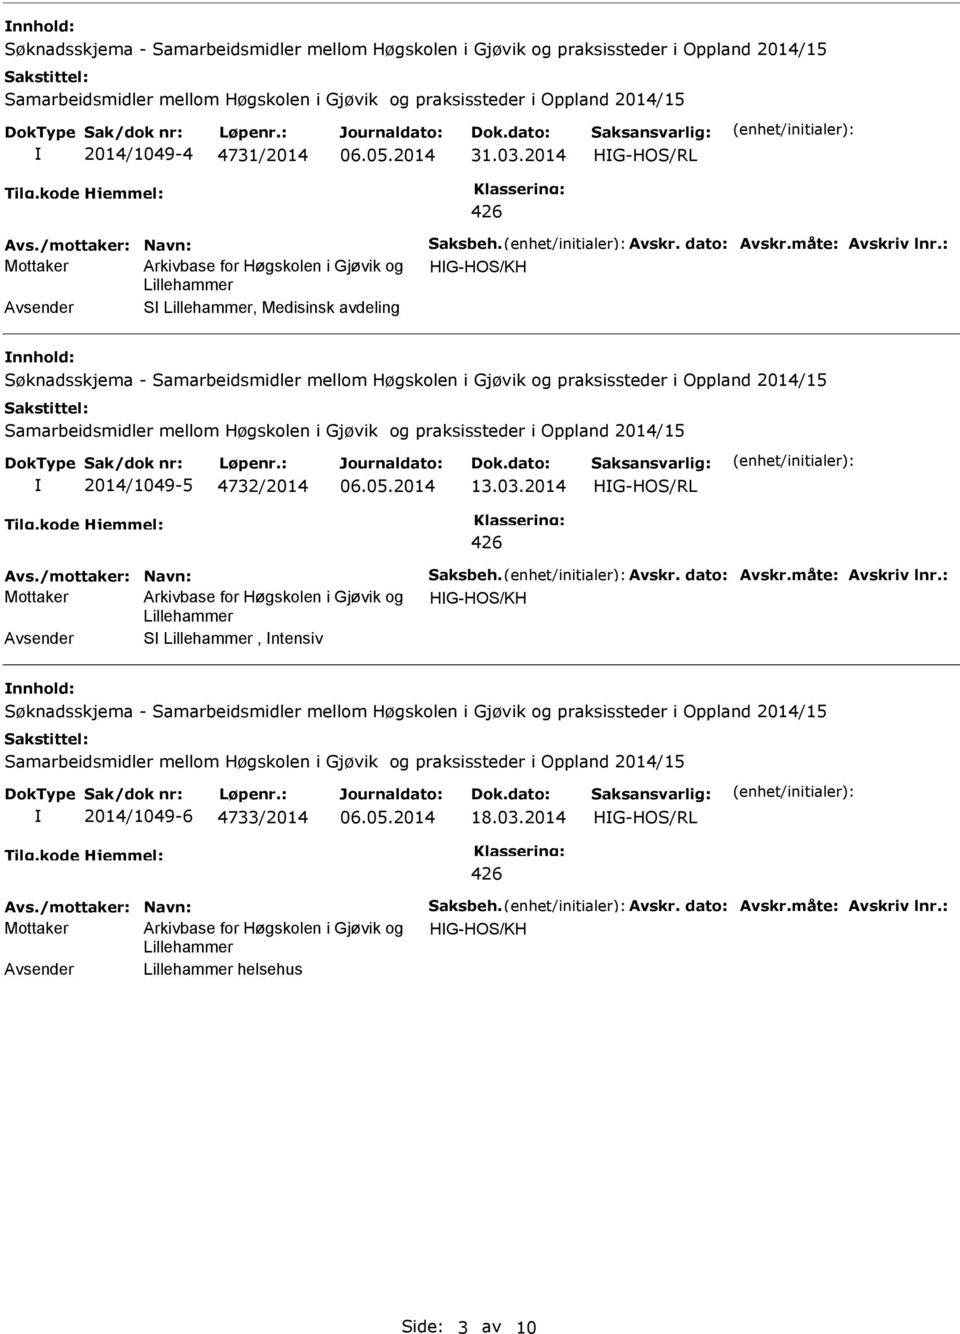 2014 HG-HO/RL Mottaker HG-HO/KH, Medisinsk avdeling øknadsskjema - amarbeidsmidler mellom Høgskolen i Gjøvik og praksissteder i Oppland 2014/15 amarbeidsmidler mellom Høgskolen i